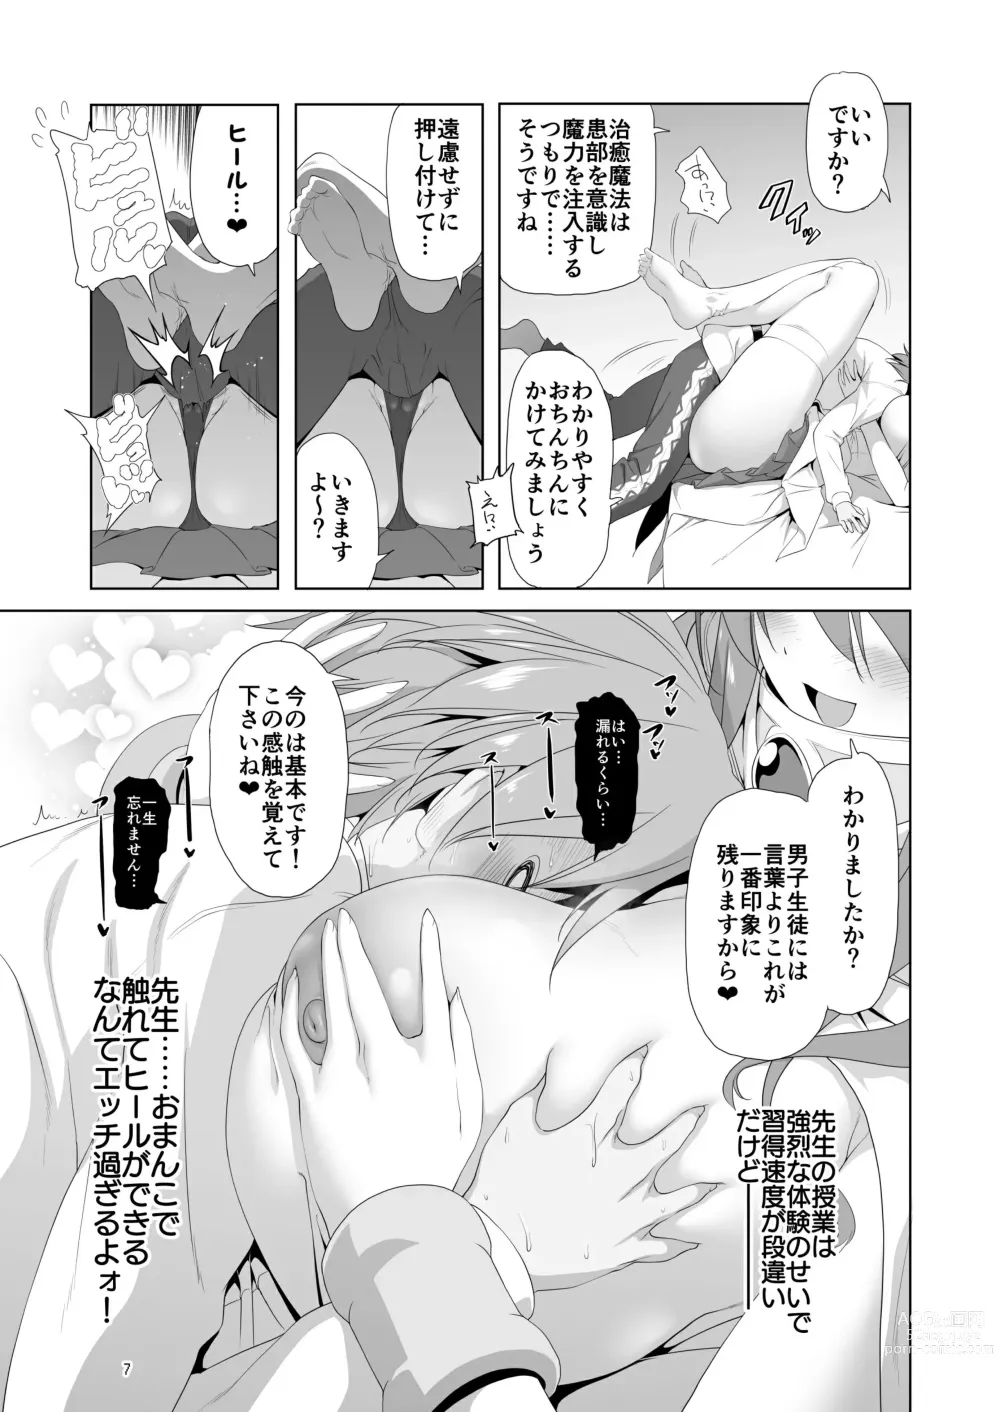 Page 7 of doujinshi Makotoni Zannen desu ga Bouken no Sho 9 wa Kiete Shimaimashita.